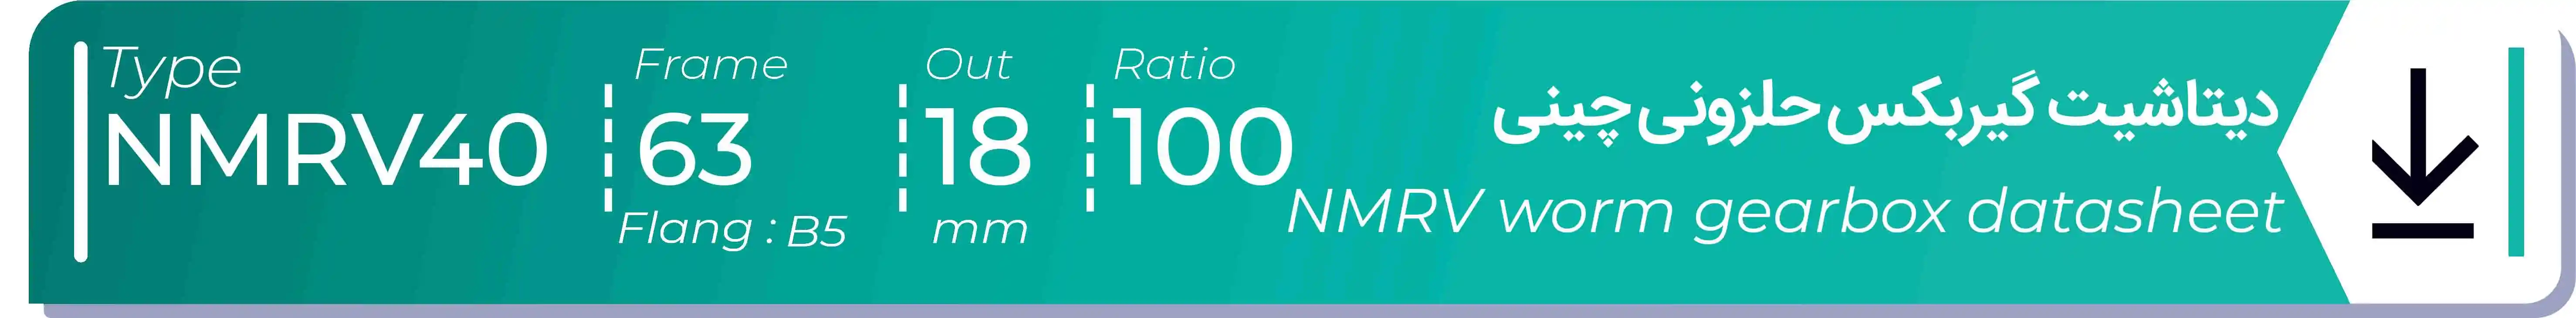  دیتاشیت و مشخصات فنی گیربکس حلزونی چینی   NMRV40  -  با خروجی 18- میلی متر و نسبت100 و فریم 63